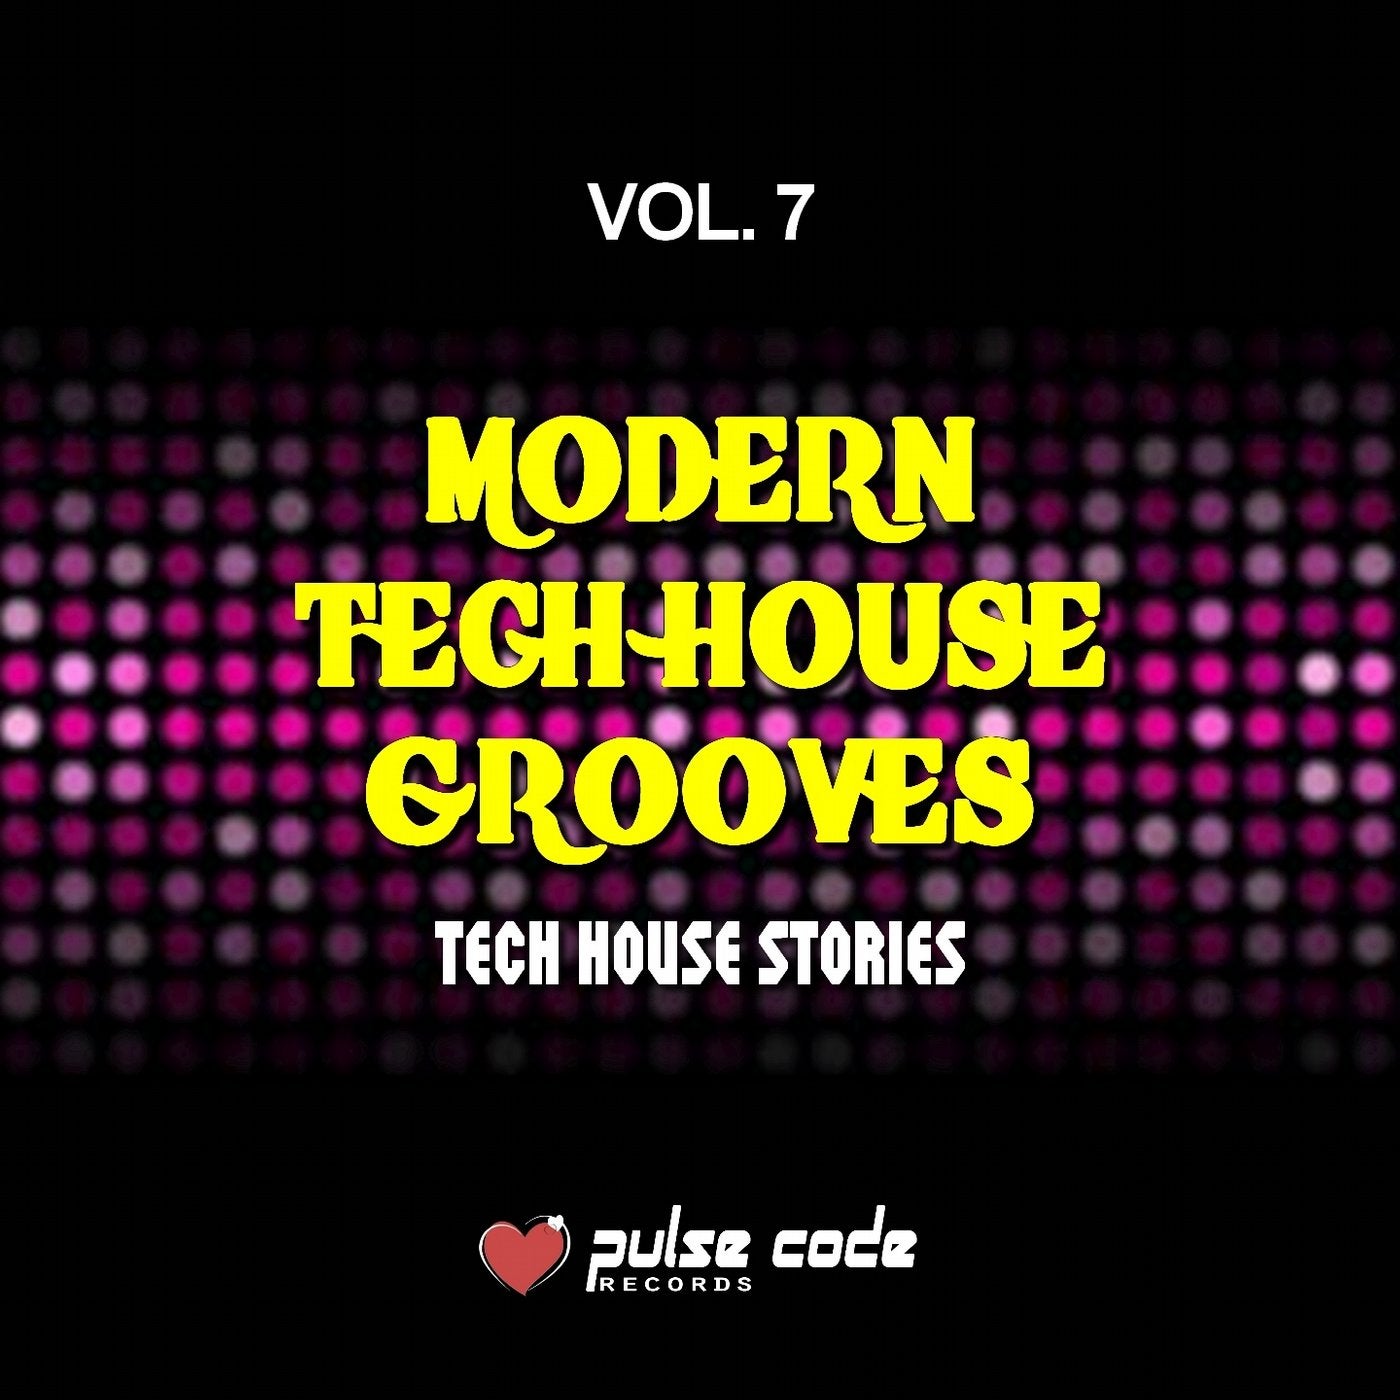 Modern Tech House Grooves, Vol. 7 (Tech House Stories)